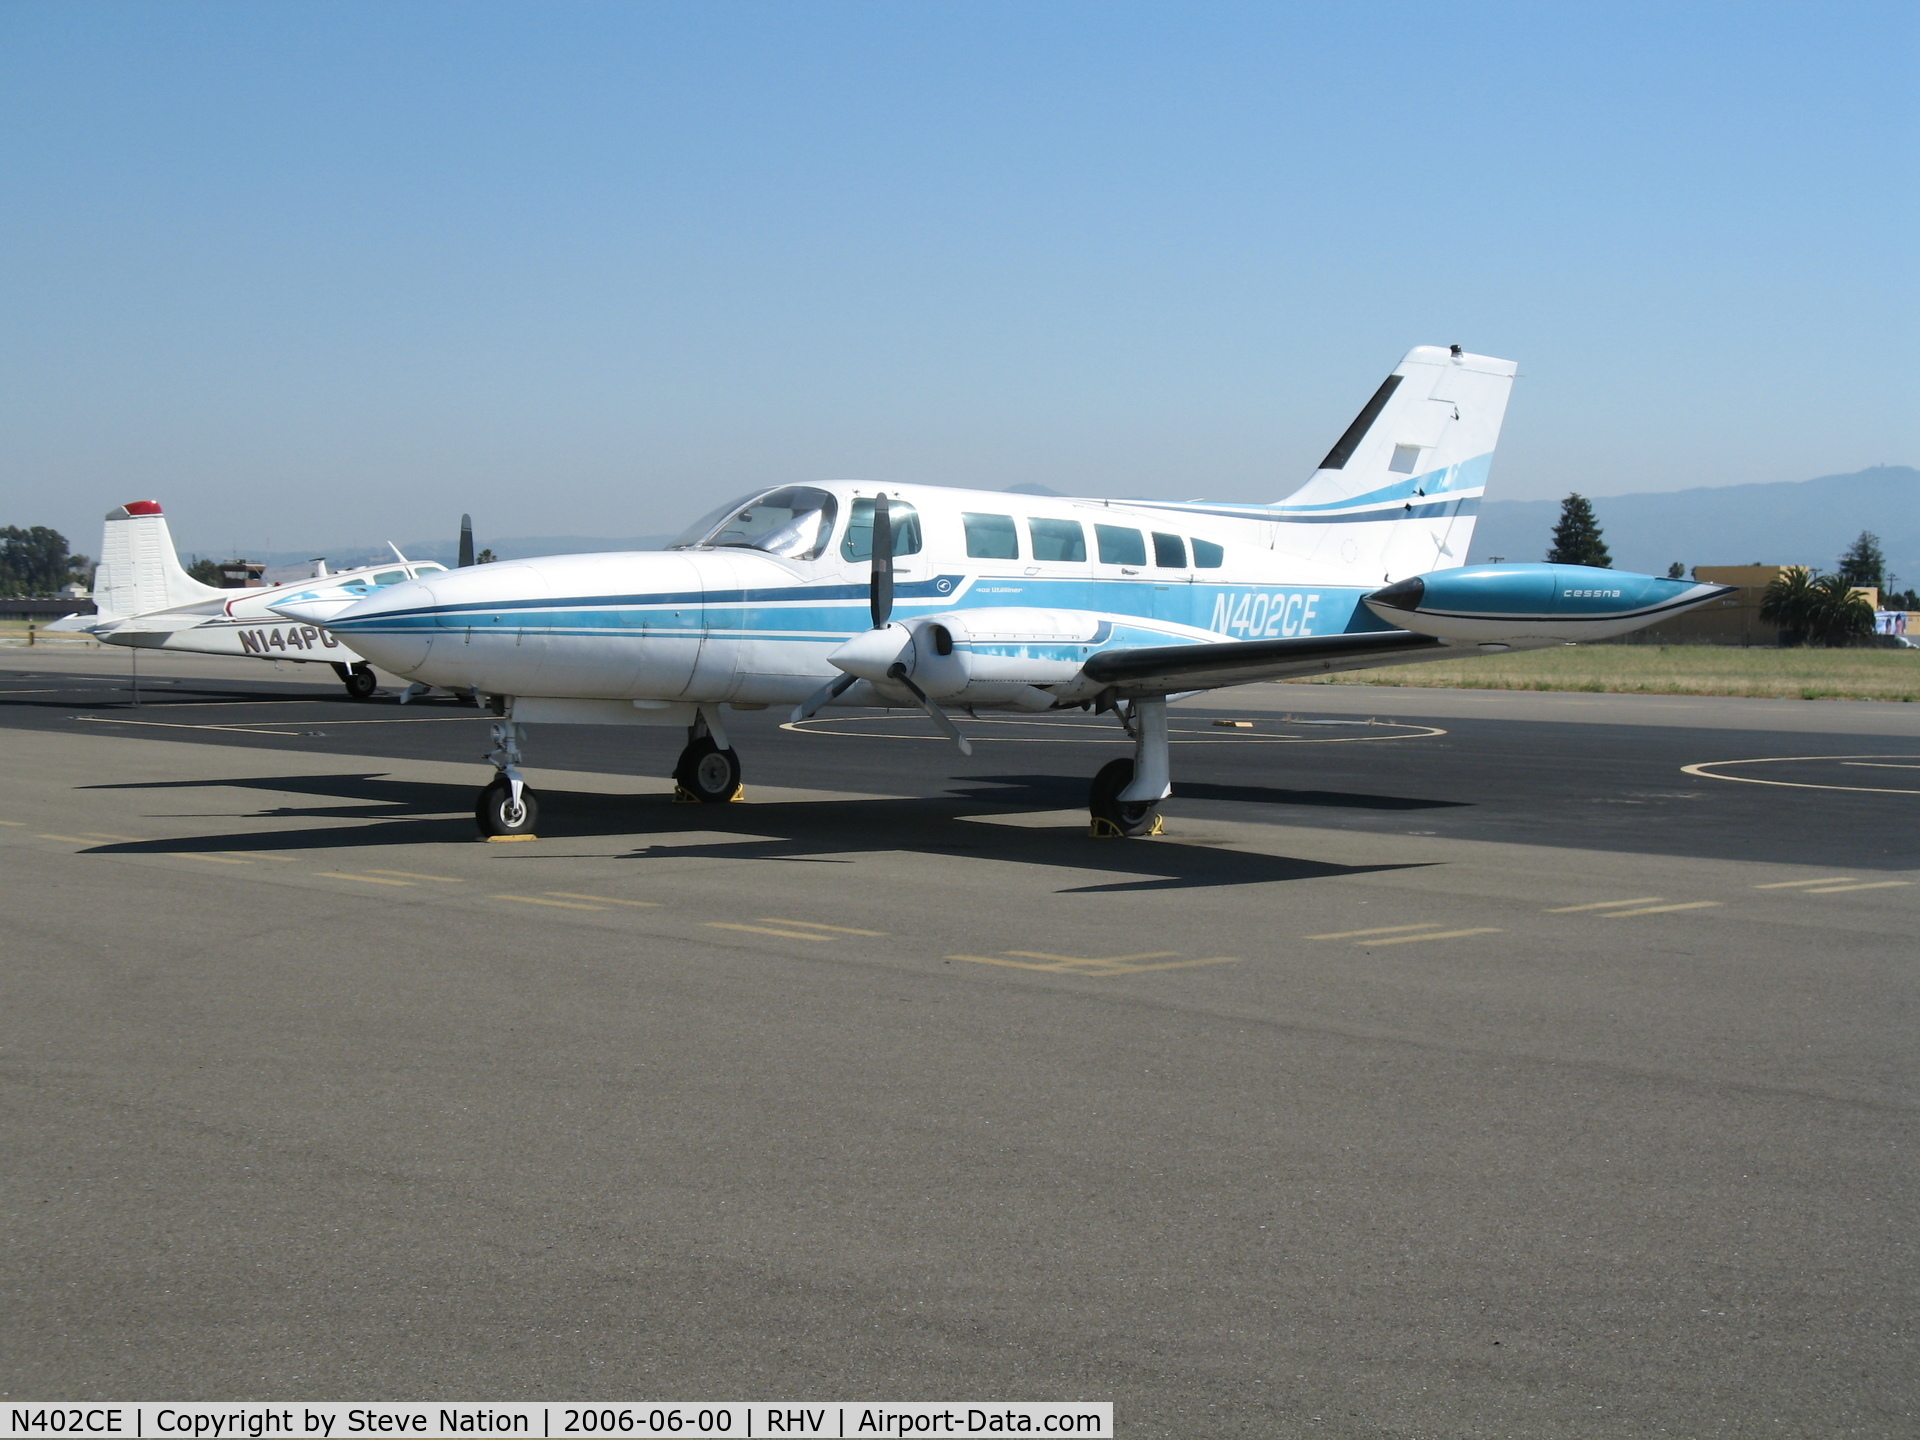 N402CE, 1973 Cessna 402B Utiliner C/N 402B0364, Cal Nice Air 1973 Cessna 402B @ Reid-Hillview Airport (San Jose), CA